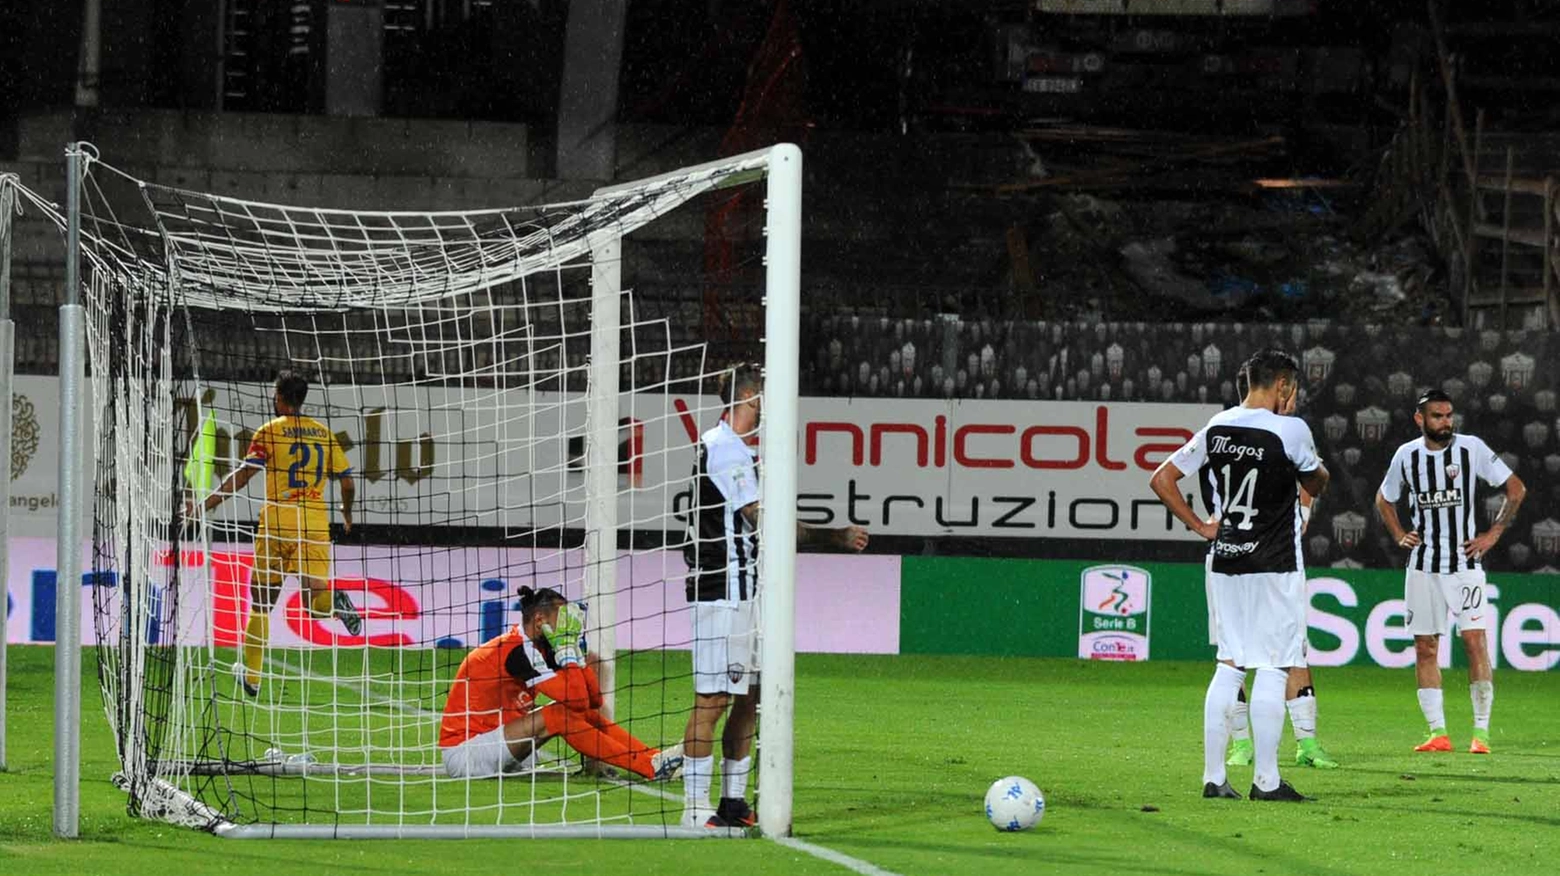 Il gol negli ultimi secondi che segna la sconfitta dell'Ascoli (foto Schicchi)